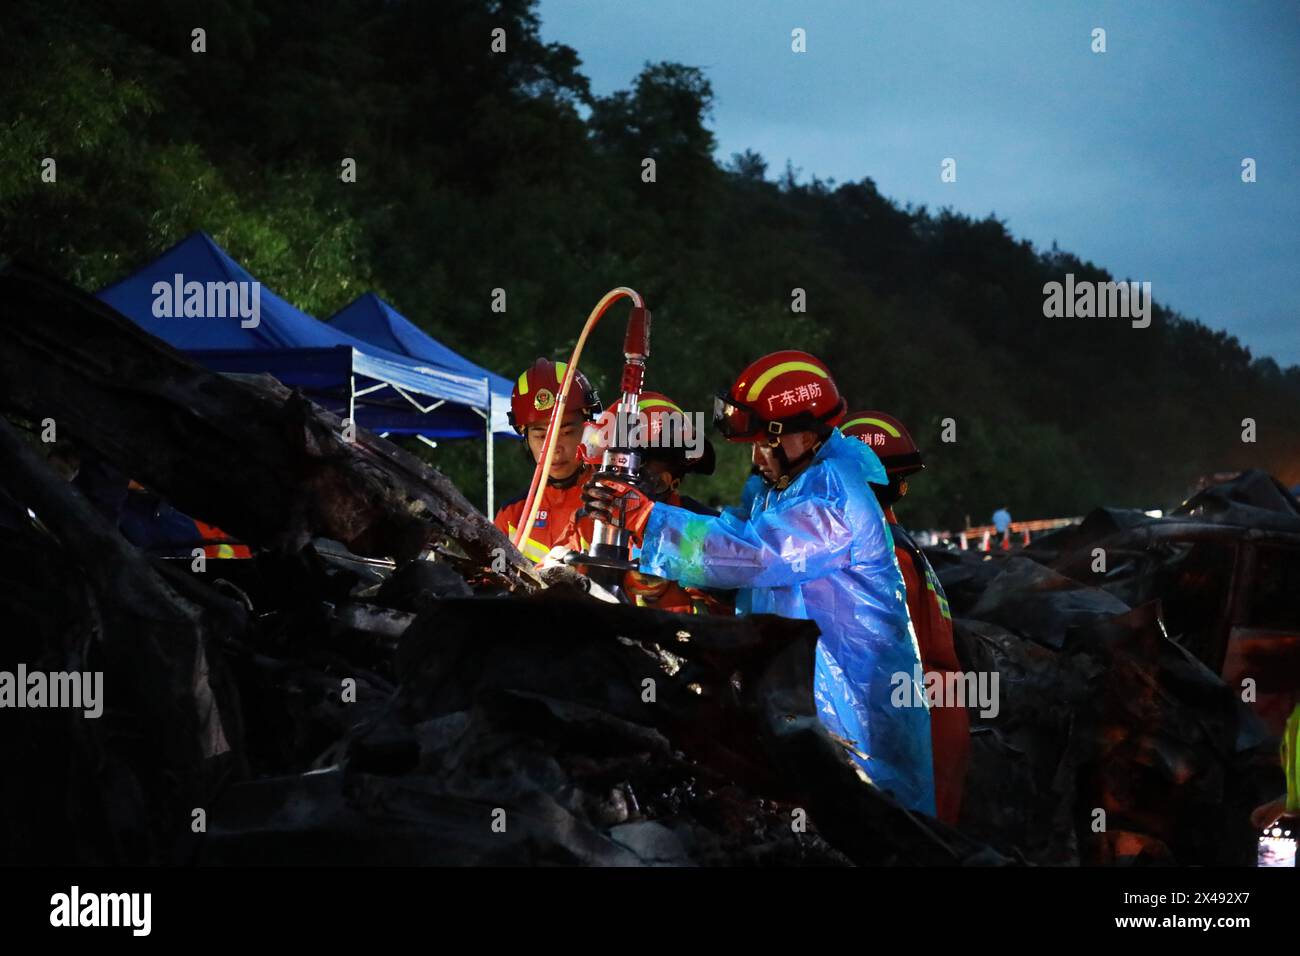 (240501) -- GUANGZHOU, 1. Mai 2024 (Xinhua) -- Rettungskräfte arbeiten an der Stelle eines Autobahnunfalls auf dem Meizhou-Dabu Expressway in Meizhou, südchinesischer Provinz Guangdong, 1. Mai 2024. Die Zahl der Todesopfer ist auf 24 gestiegen, nachdem ein Teil einer Schnellstraße in der südchinesischen Provinz Guangdong zusammenbrach und 20 Fahrzeuge zum Sturz gebracht hatte, sagten die lokalen Behörden am frühen Mittwochmorgen. Weitere 30 Menschen werden im Krankenhaus behandelt, ohne dass sie in lebensbedrohlichem Zustand sind, so die Regierung der Stadt Meizhou. Der Vorfall ereignete sich gegen 2:10 Uhr auf der Meizhou-D Stockfoto